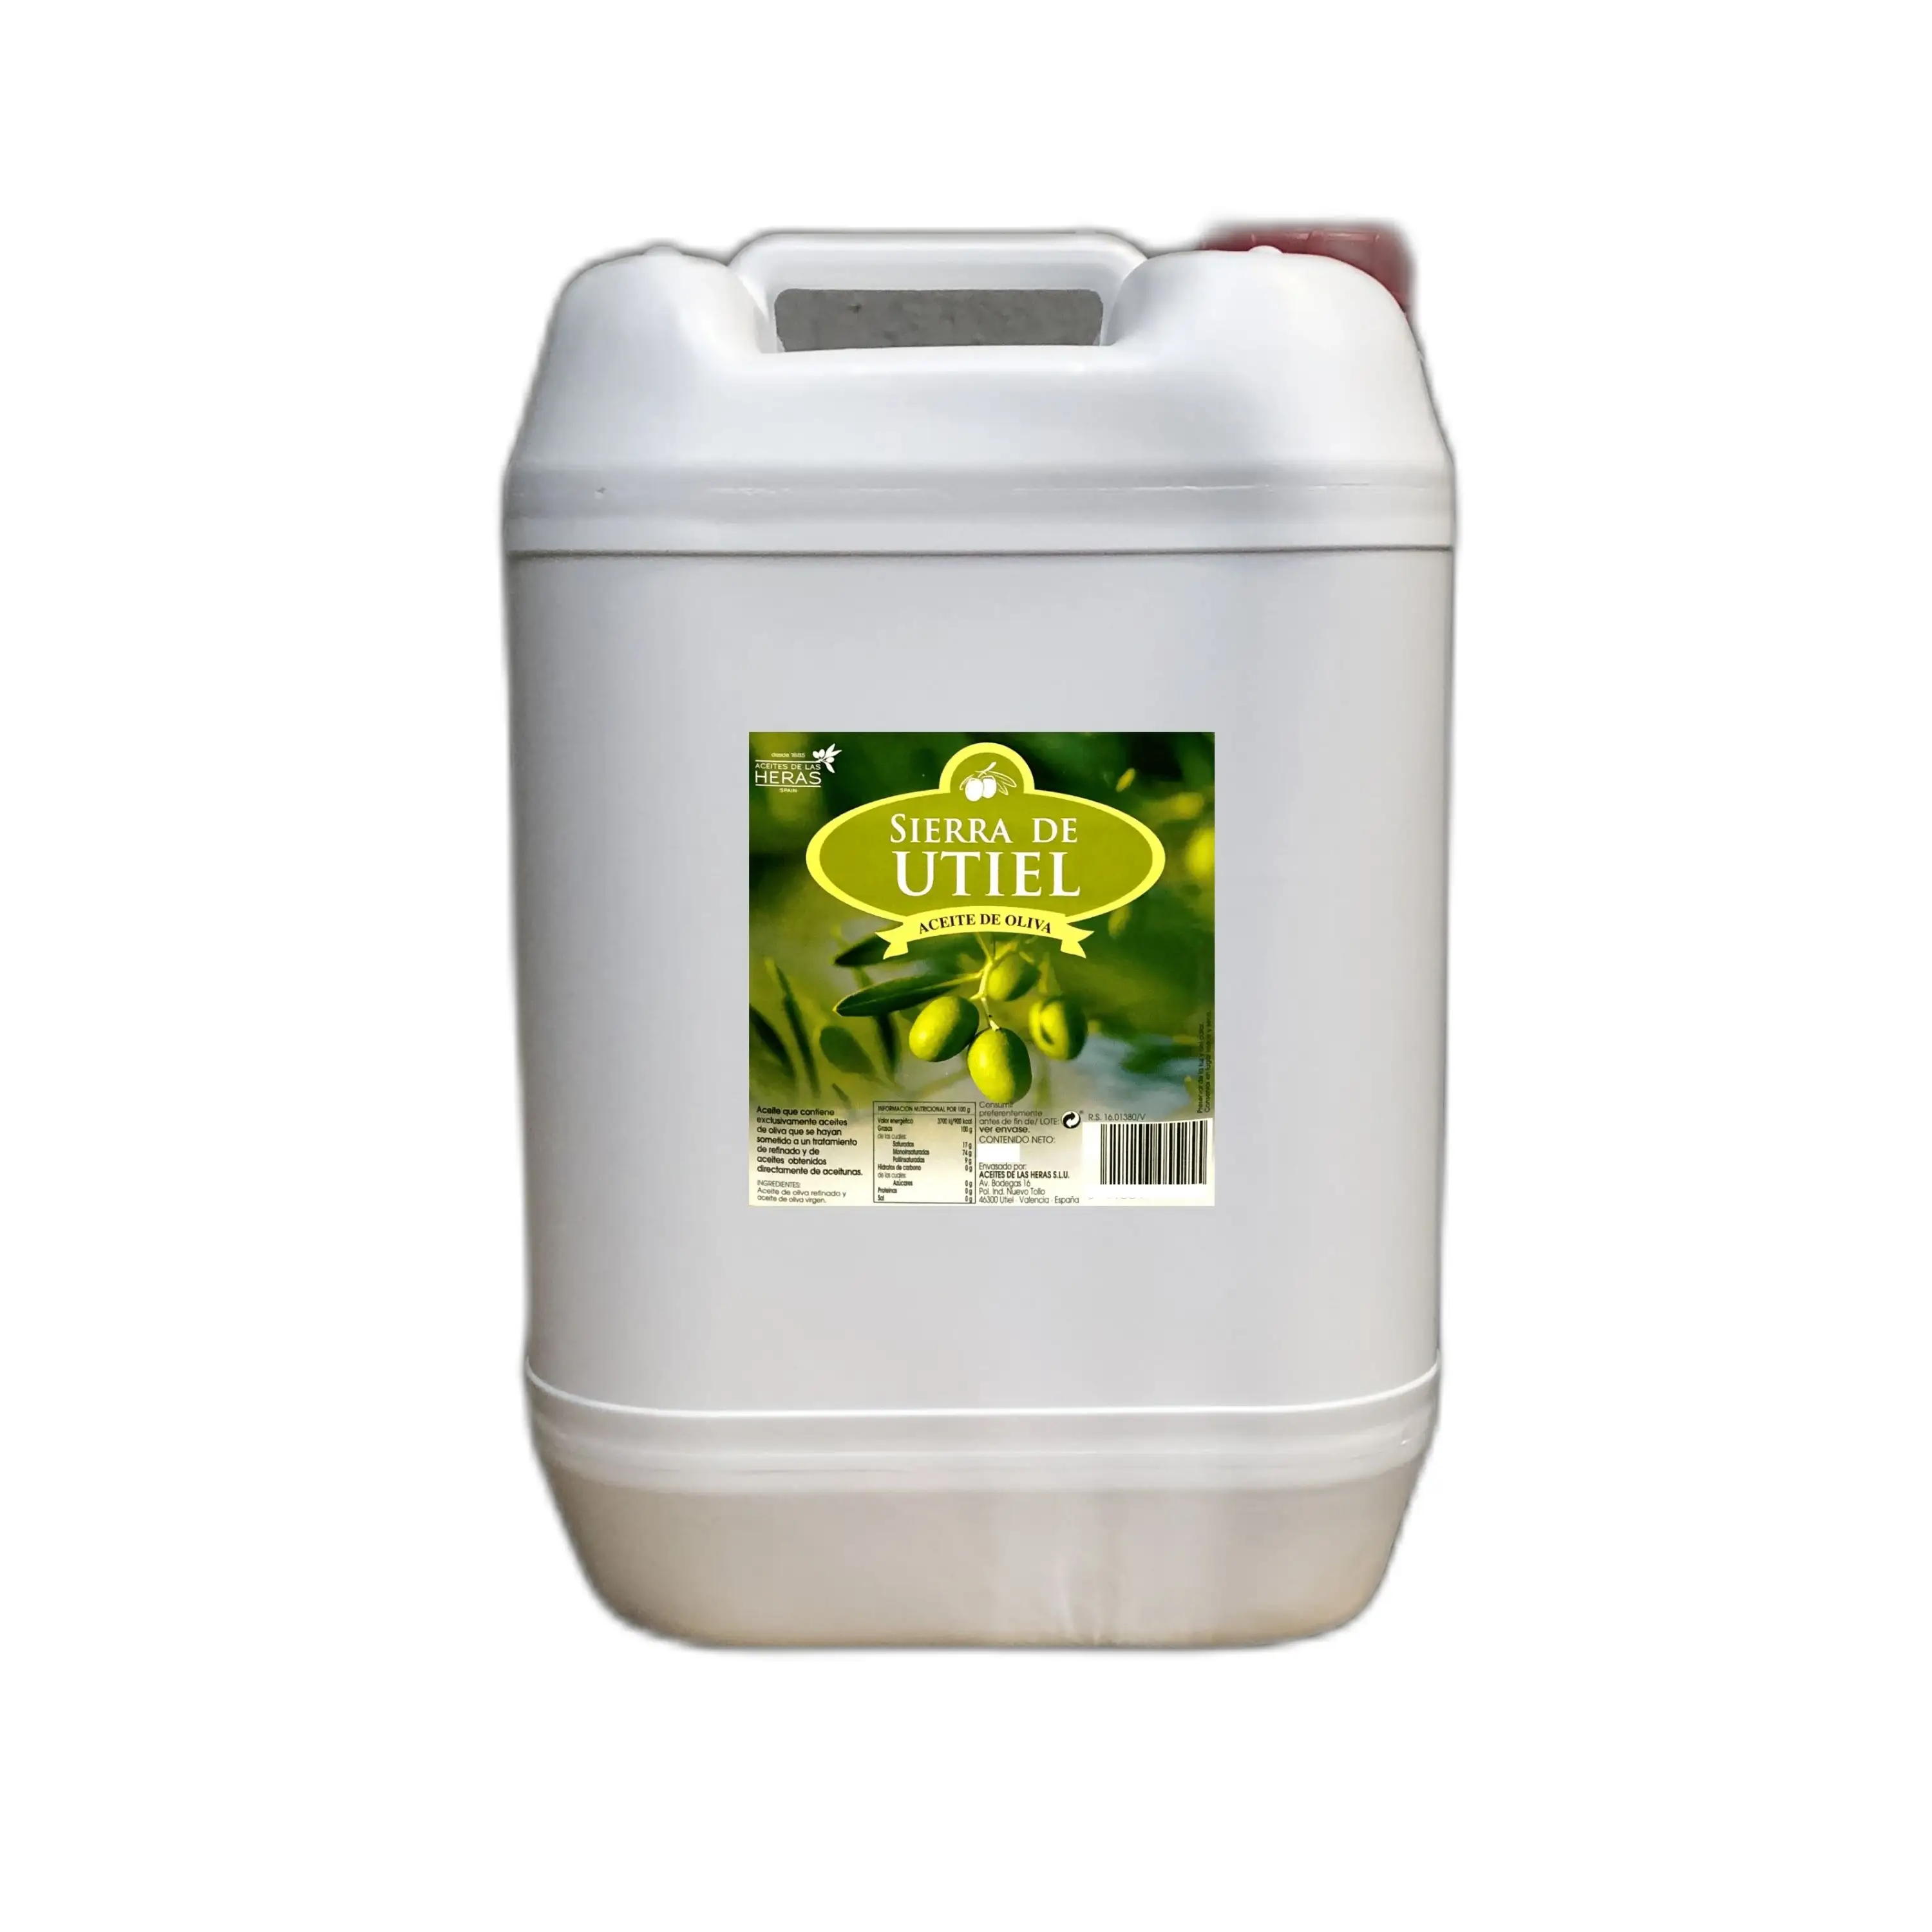 Pure Olijfolie 10 L Plastic Jerrycan Voor Horeca & Foodservice, Sierra De Utiel 100% Spaanse Olijfolie